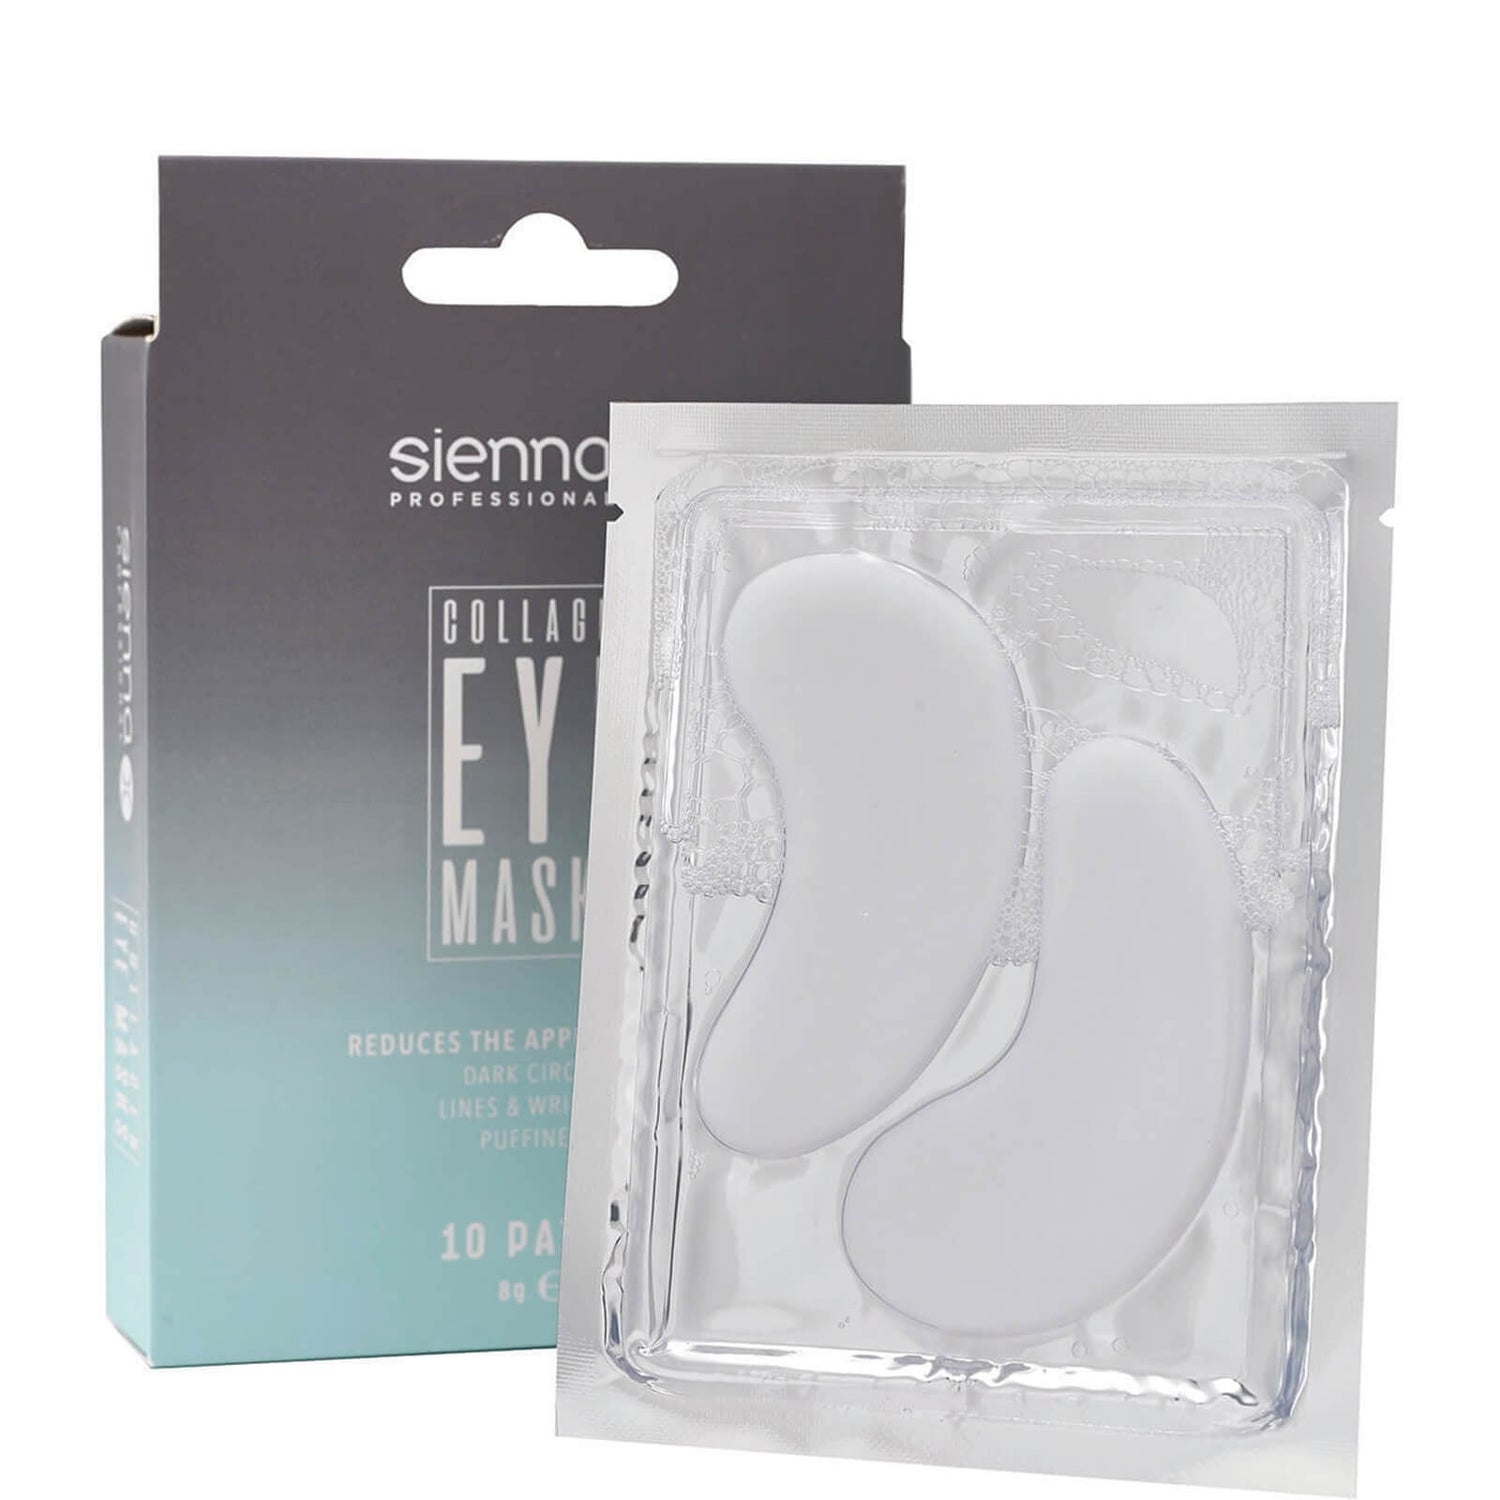 Патчи для глаз Sienna X Brow Treatment Eye Mask, 10 шт